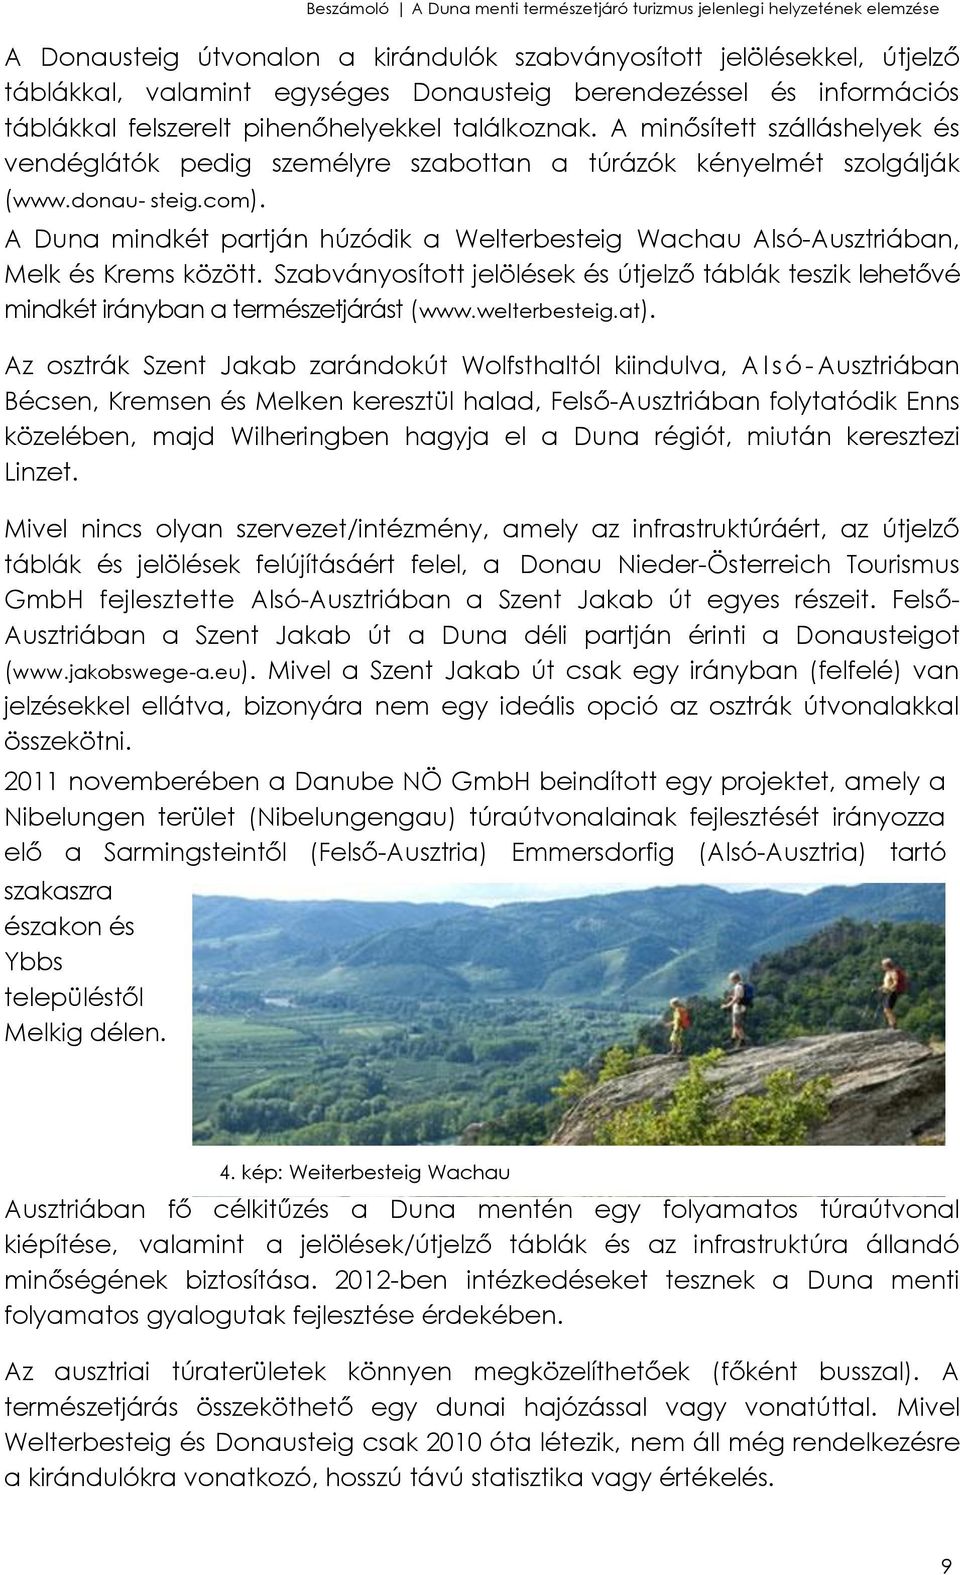 A Duna mindkét partján húzódik a Welterbesteig Wachau Alsó-Ausztriában, Melk és Krems között. Szabványosított jelölések és útjelző táblák teszik lehetővé mindkét irányban a természetjárást (www.